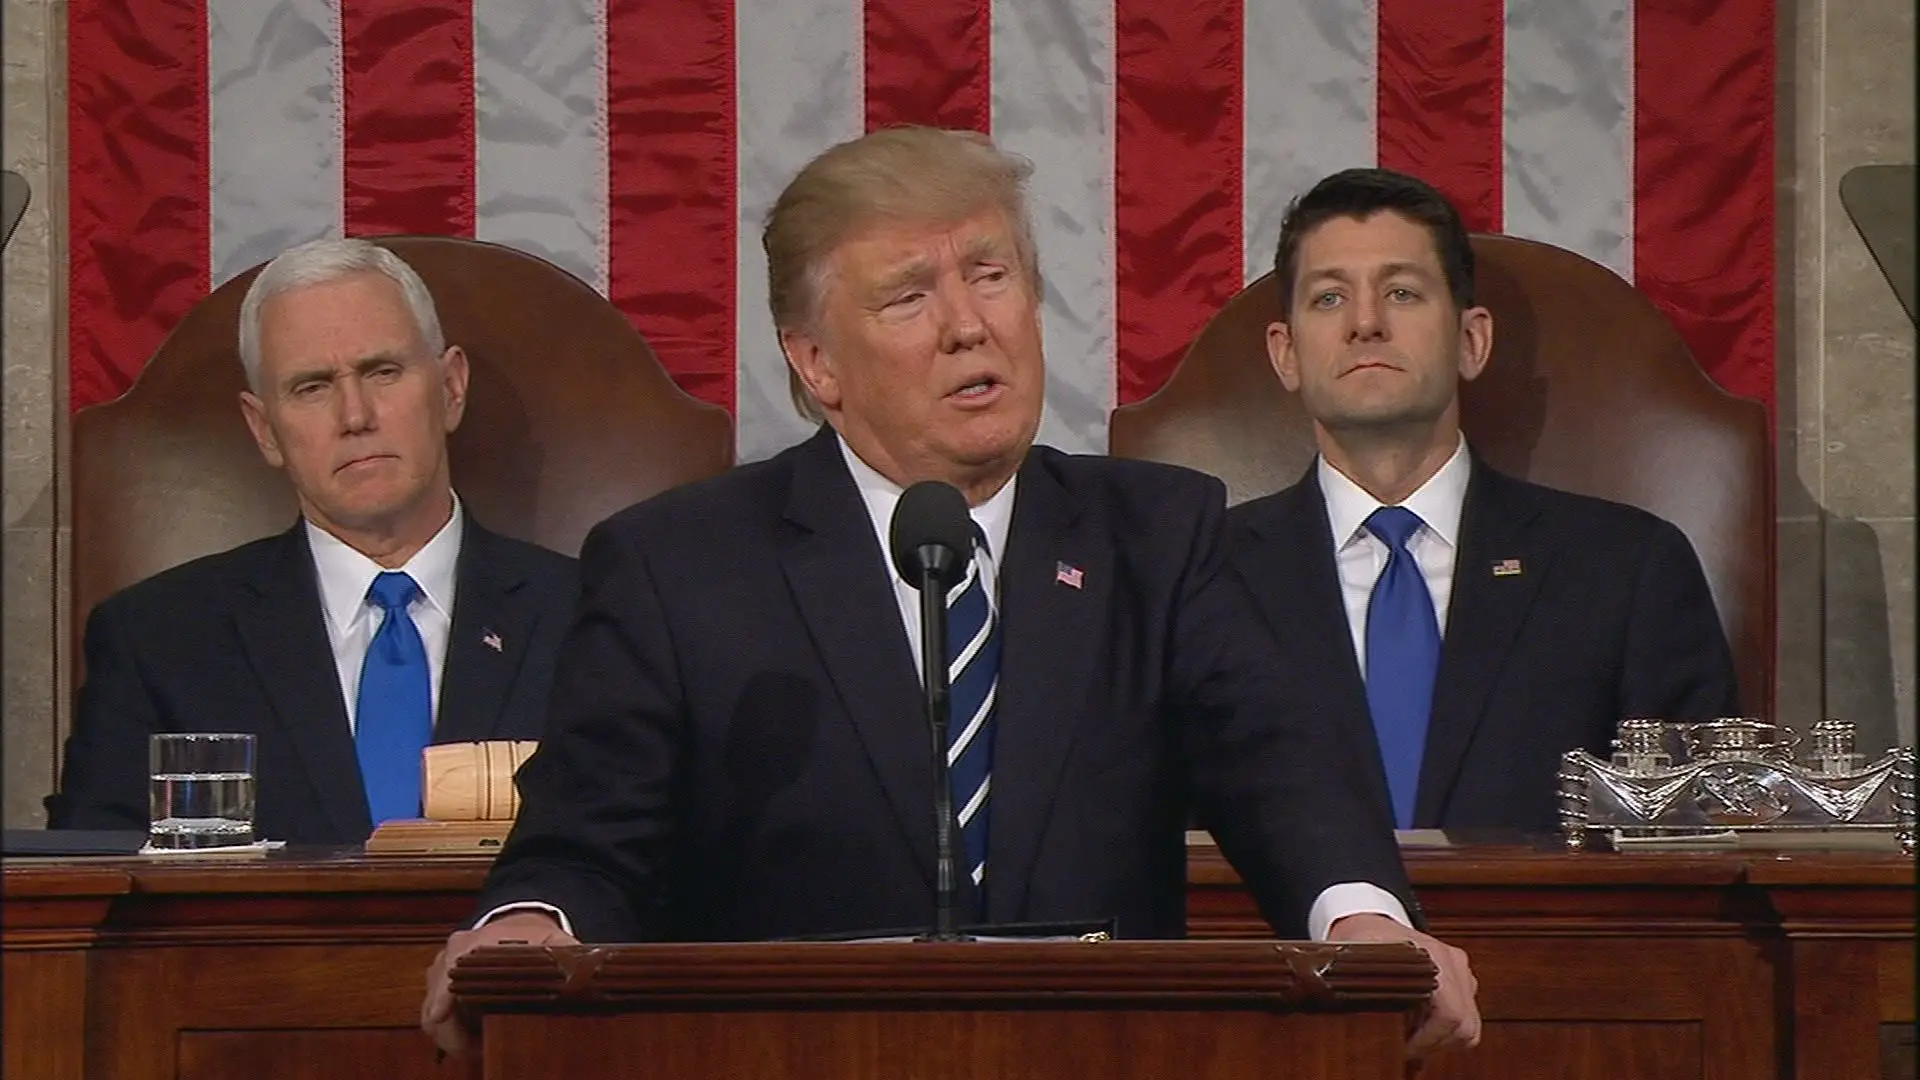 Republicans Analyze President Trumps Speech to Congress